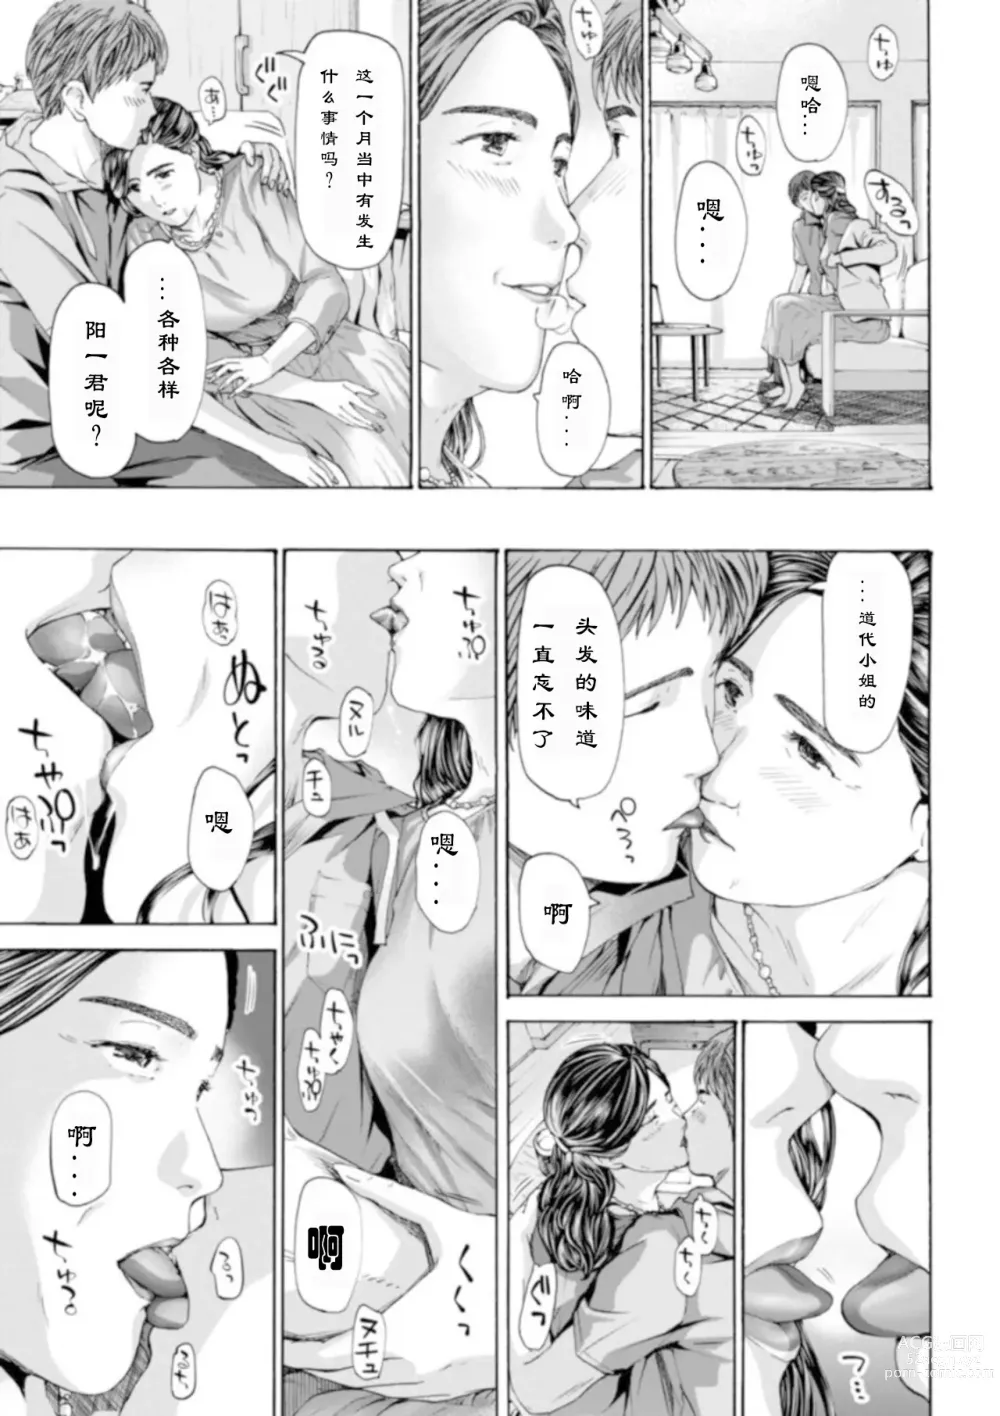 Page 5 of manga 慢慢来、慢慢来